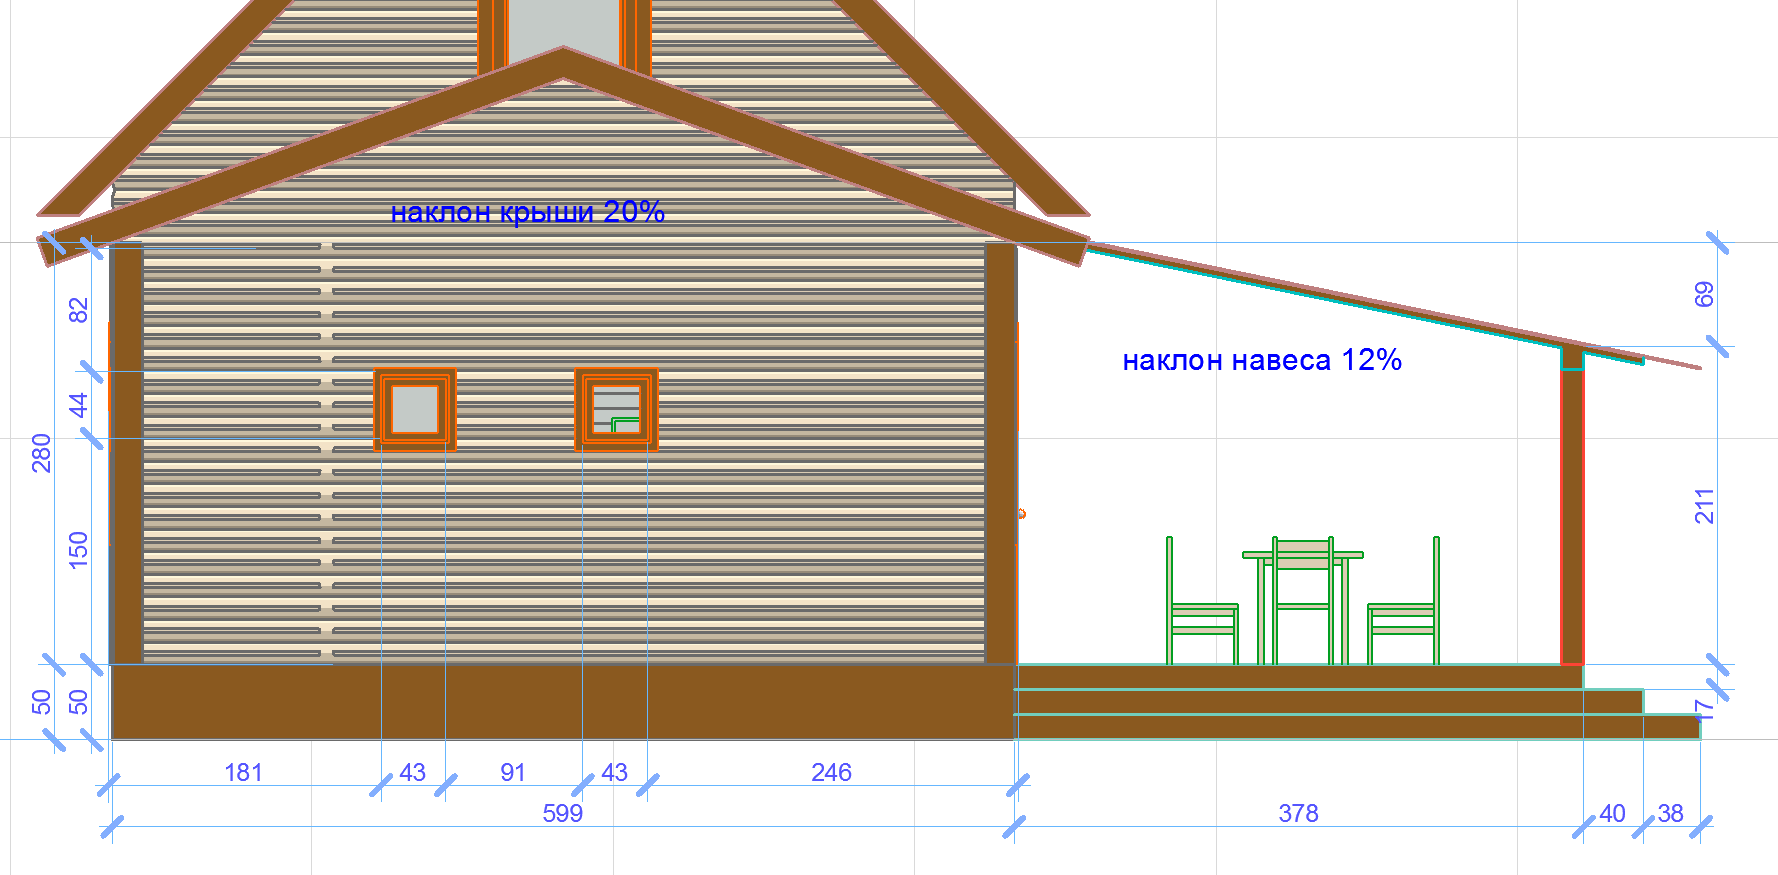 Как построить каркасную пристройку к деревянному дому своими руками: пошаговая инструкция- обзор и видео